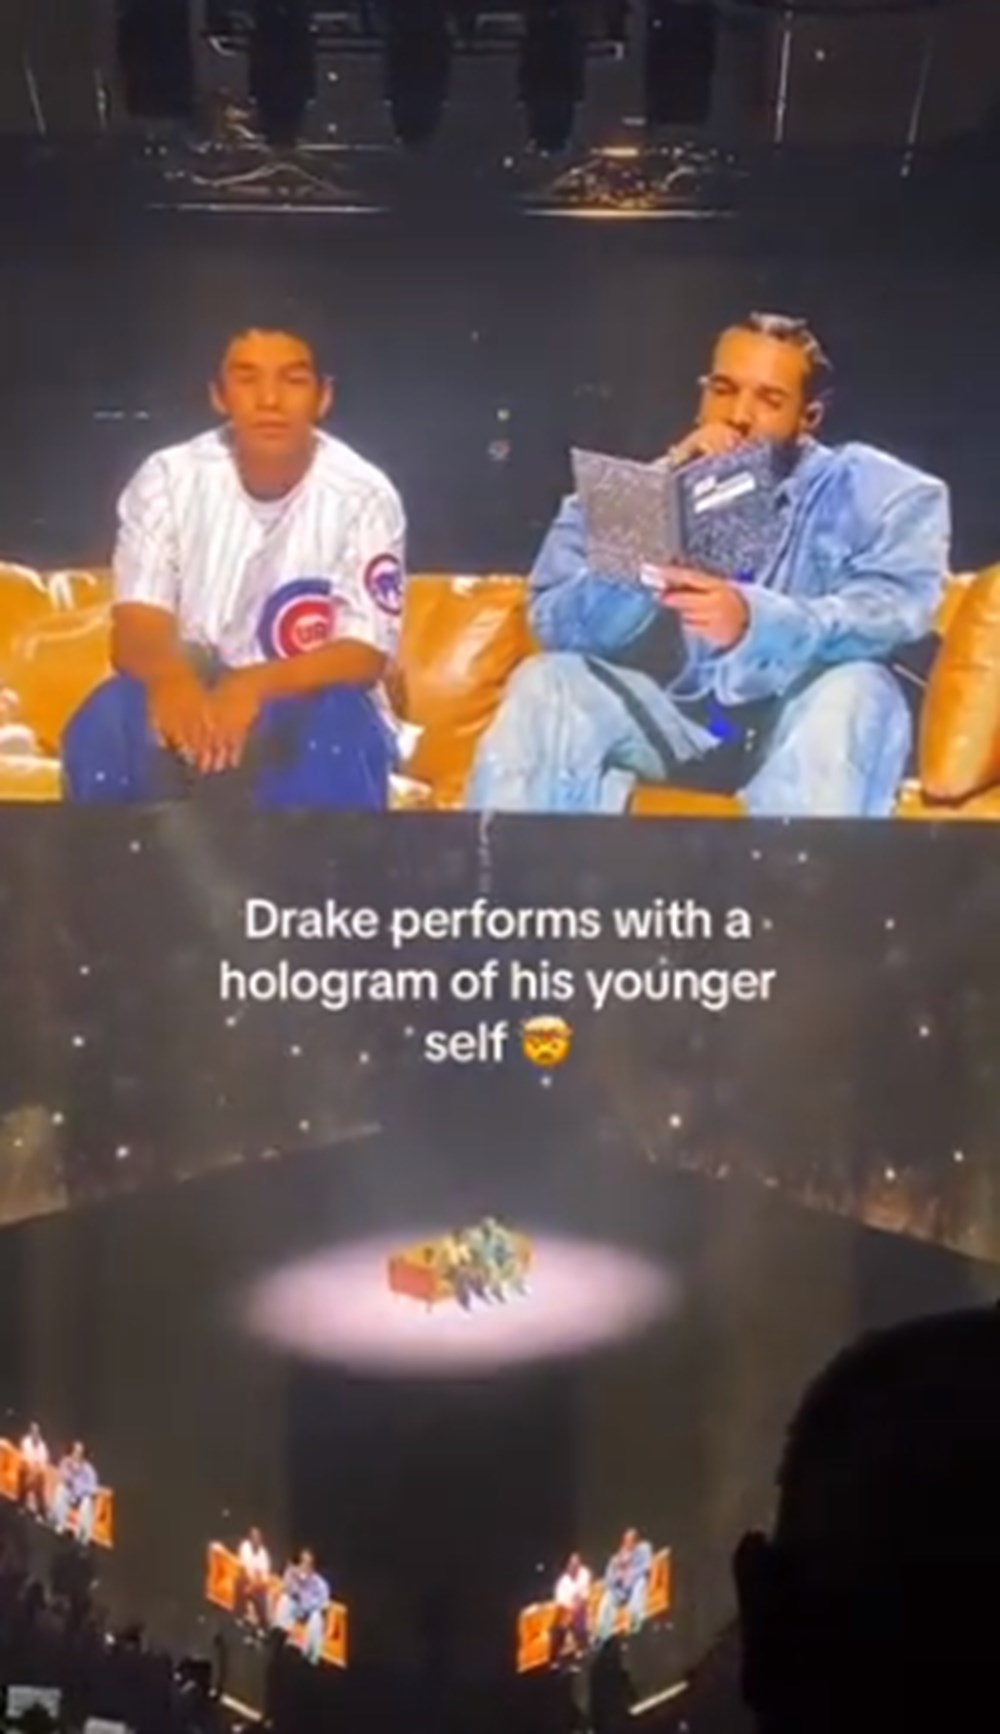 Drake'in gençlik hali hologram mı gerçek mi? - 4